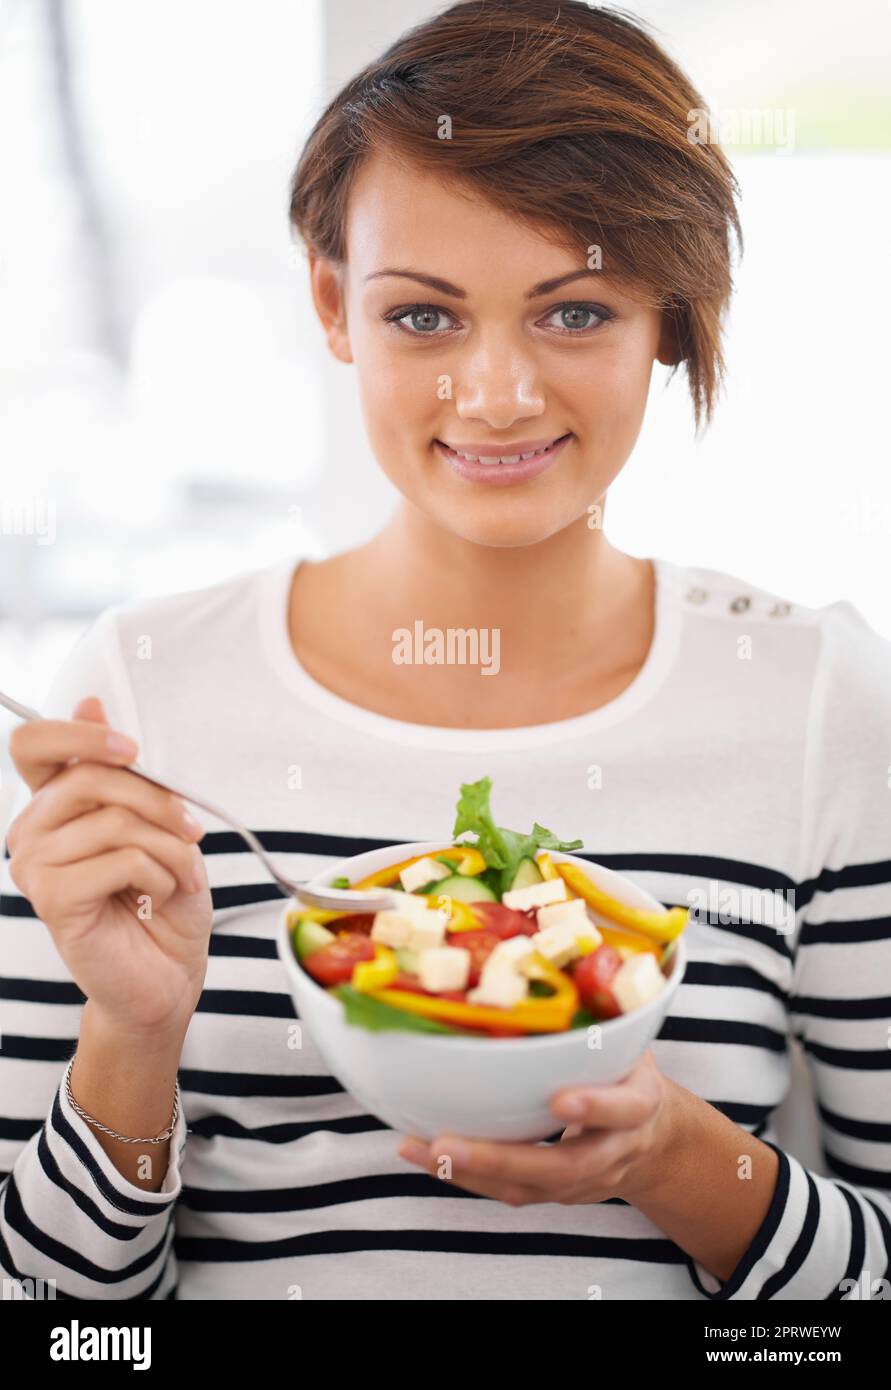 J'ai hâte du manger. Une jeune femme qui a l'air heureuse de sa salade Banque D'Images